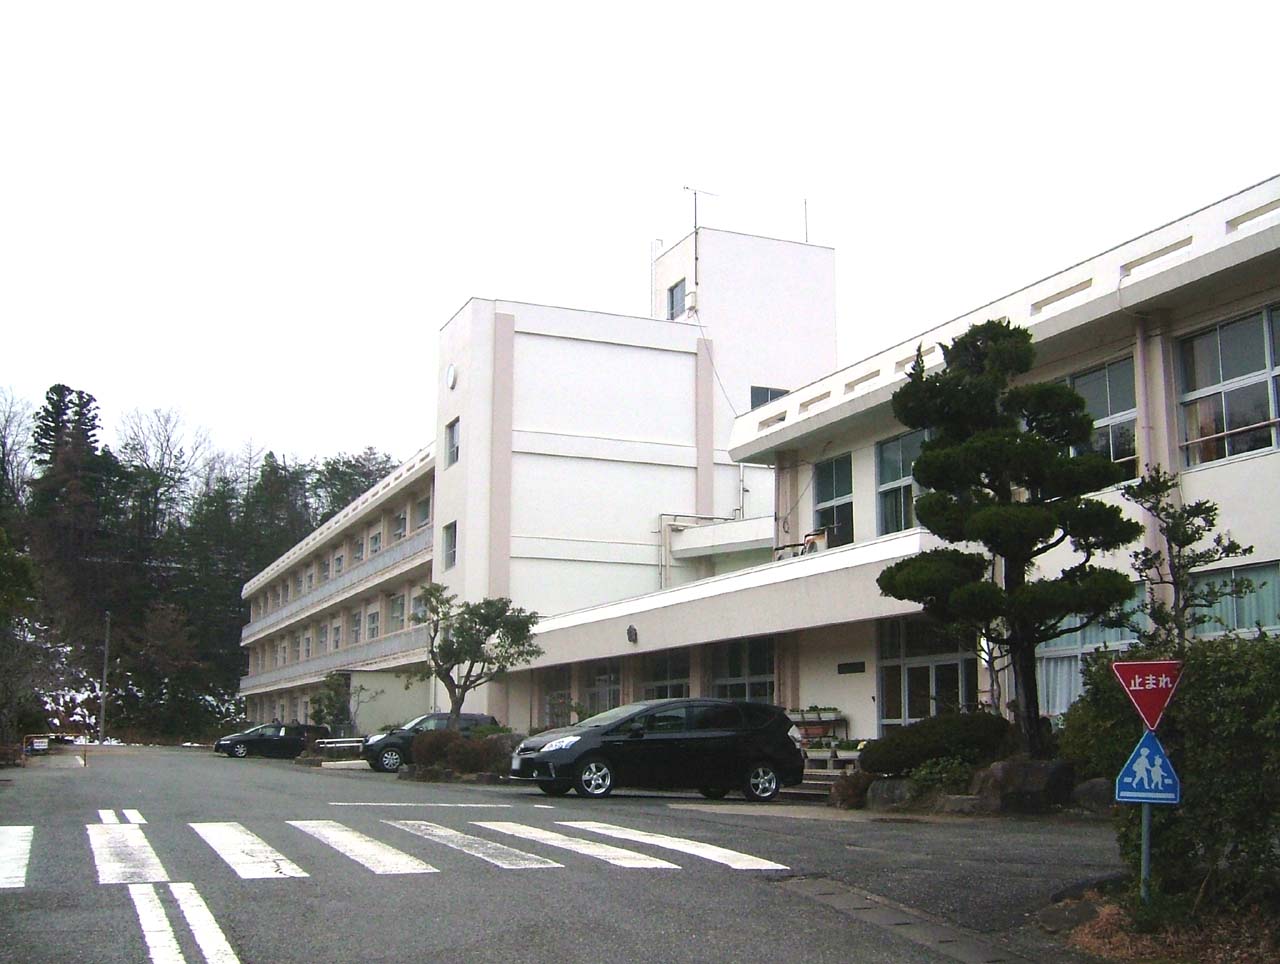 Primary school. Toyooka City Gosho to elementary school (elementary school) 568m